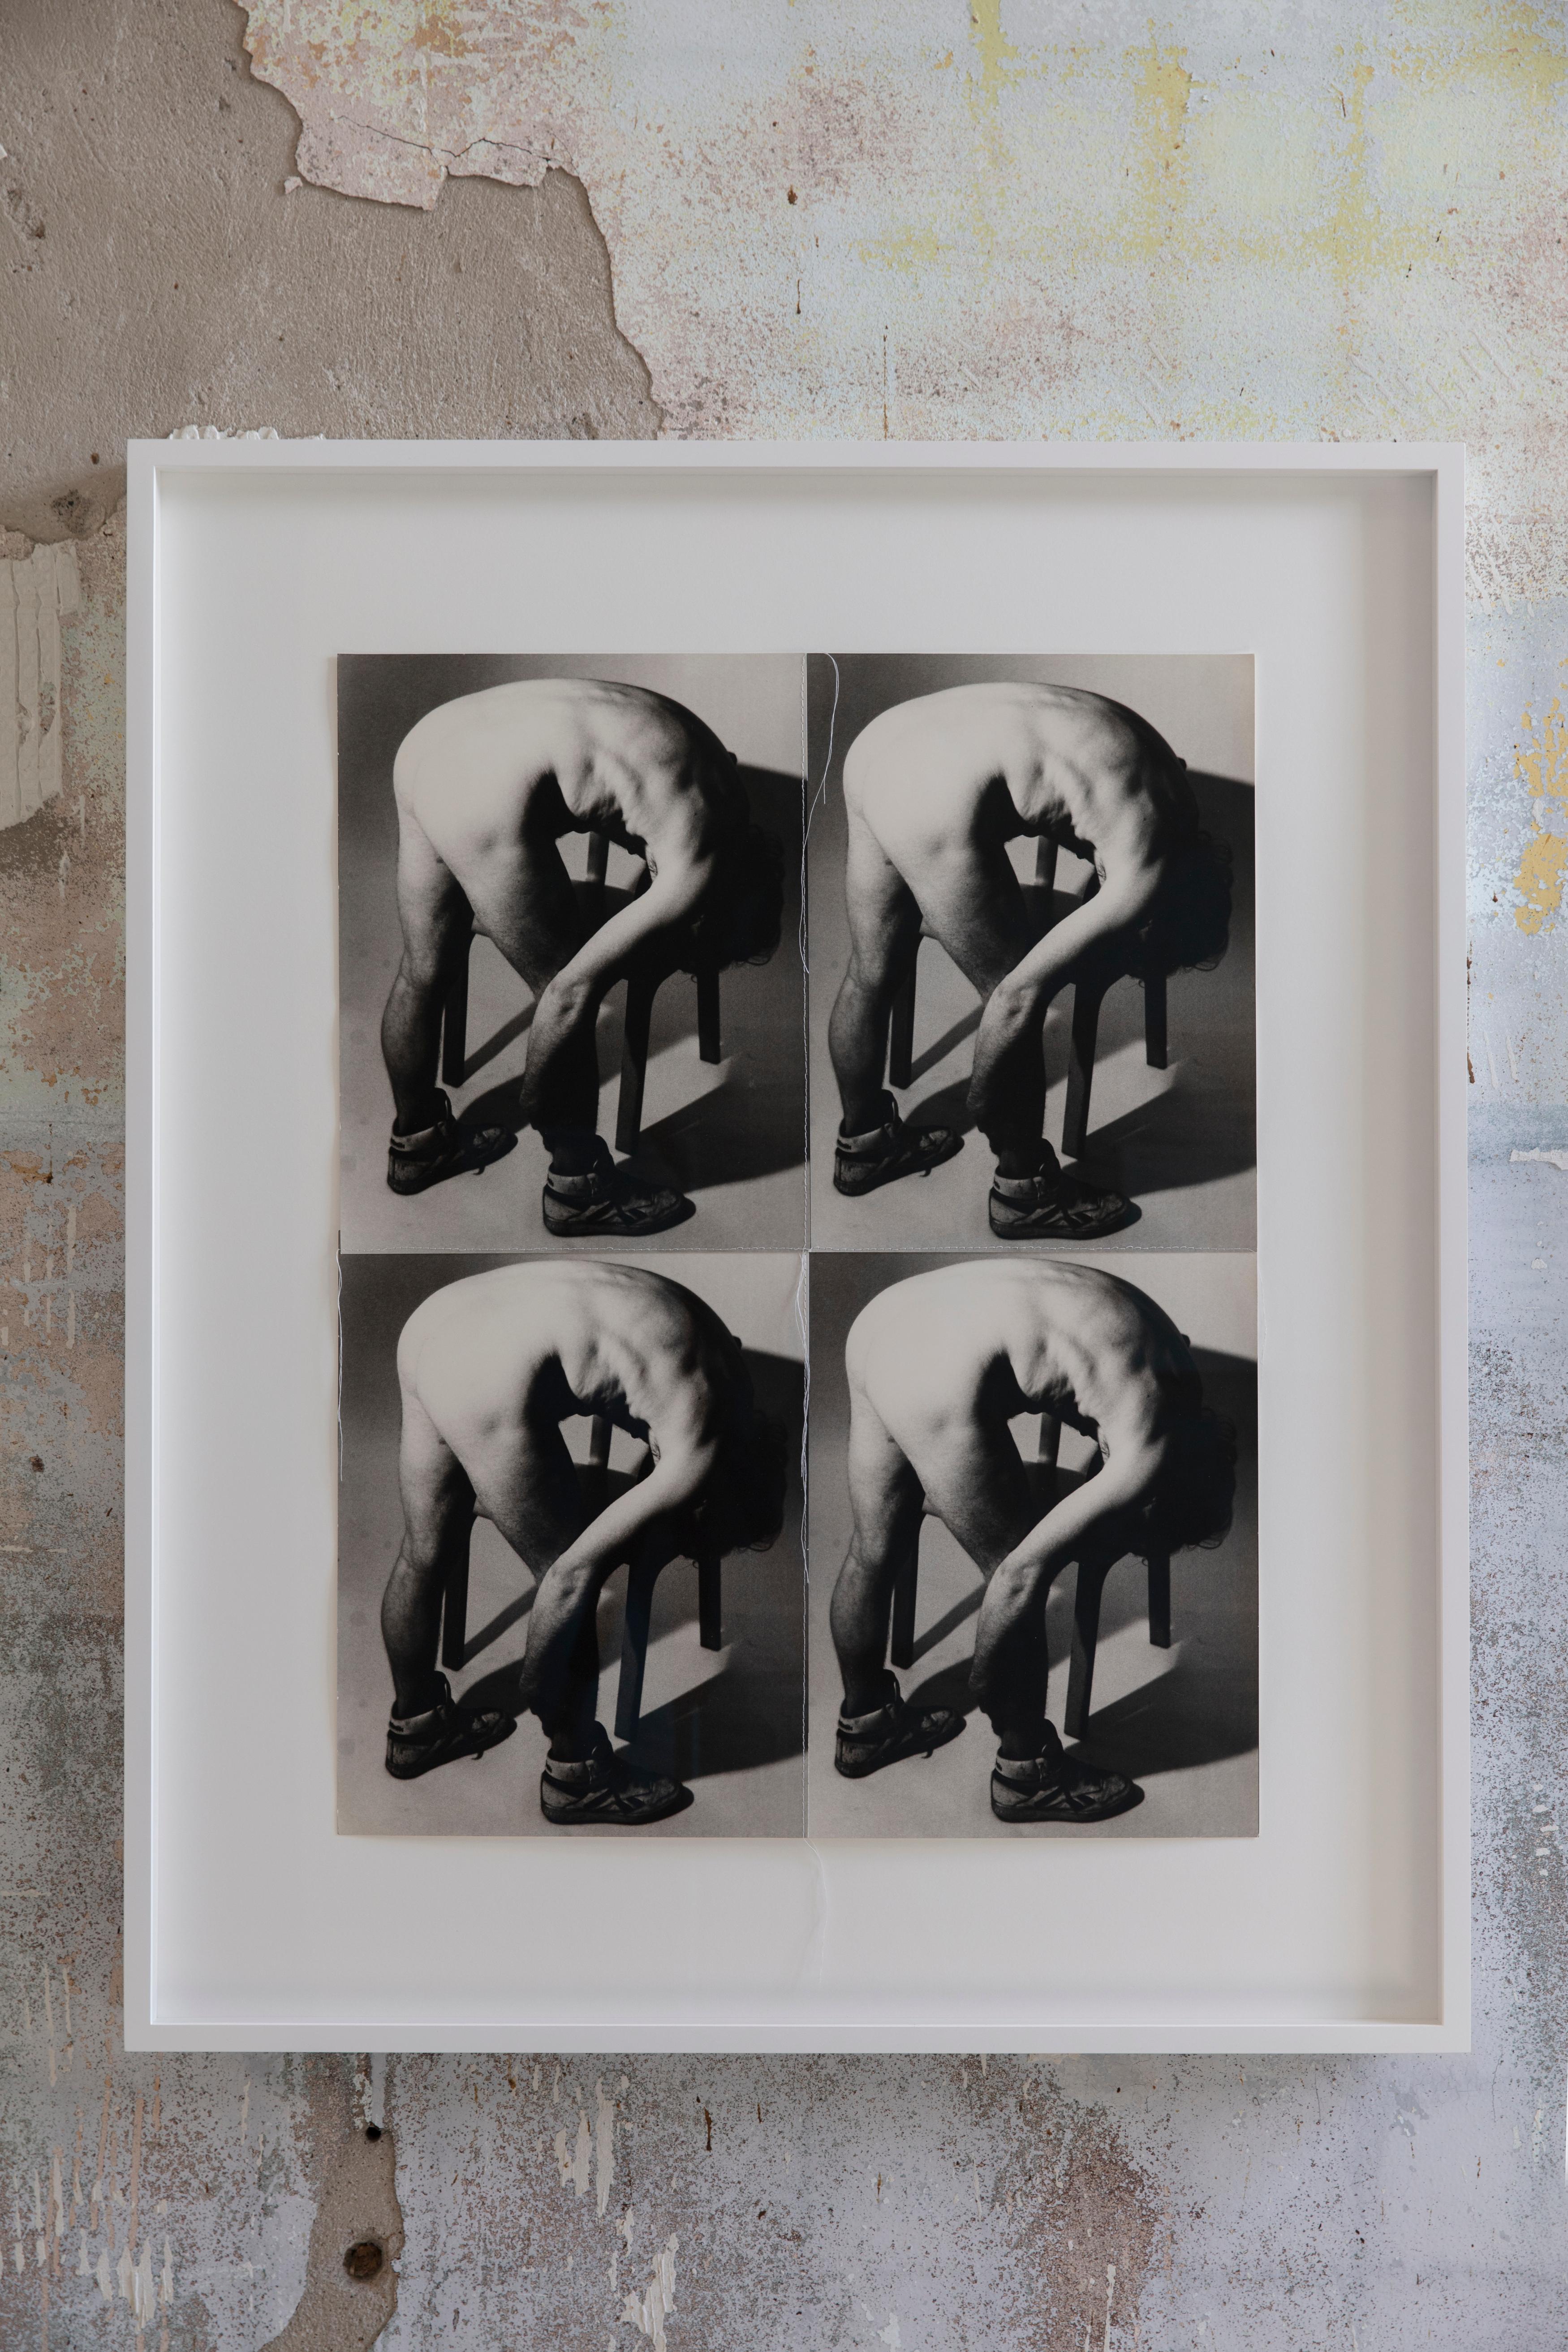 "Zwischen 1982 und 1987 schuf Andy Warhol mehrere hundert Werke, die jeweils aus mehreren identischen, mit Faden zusammengenähten Fotografien bestehen. An den Rändern der Arbeiten bleiben überschüssige Fäden hängen, was zusammen mit dem Knicken und